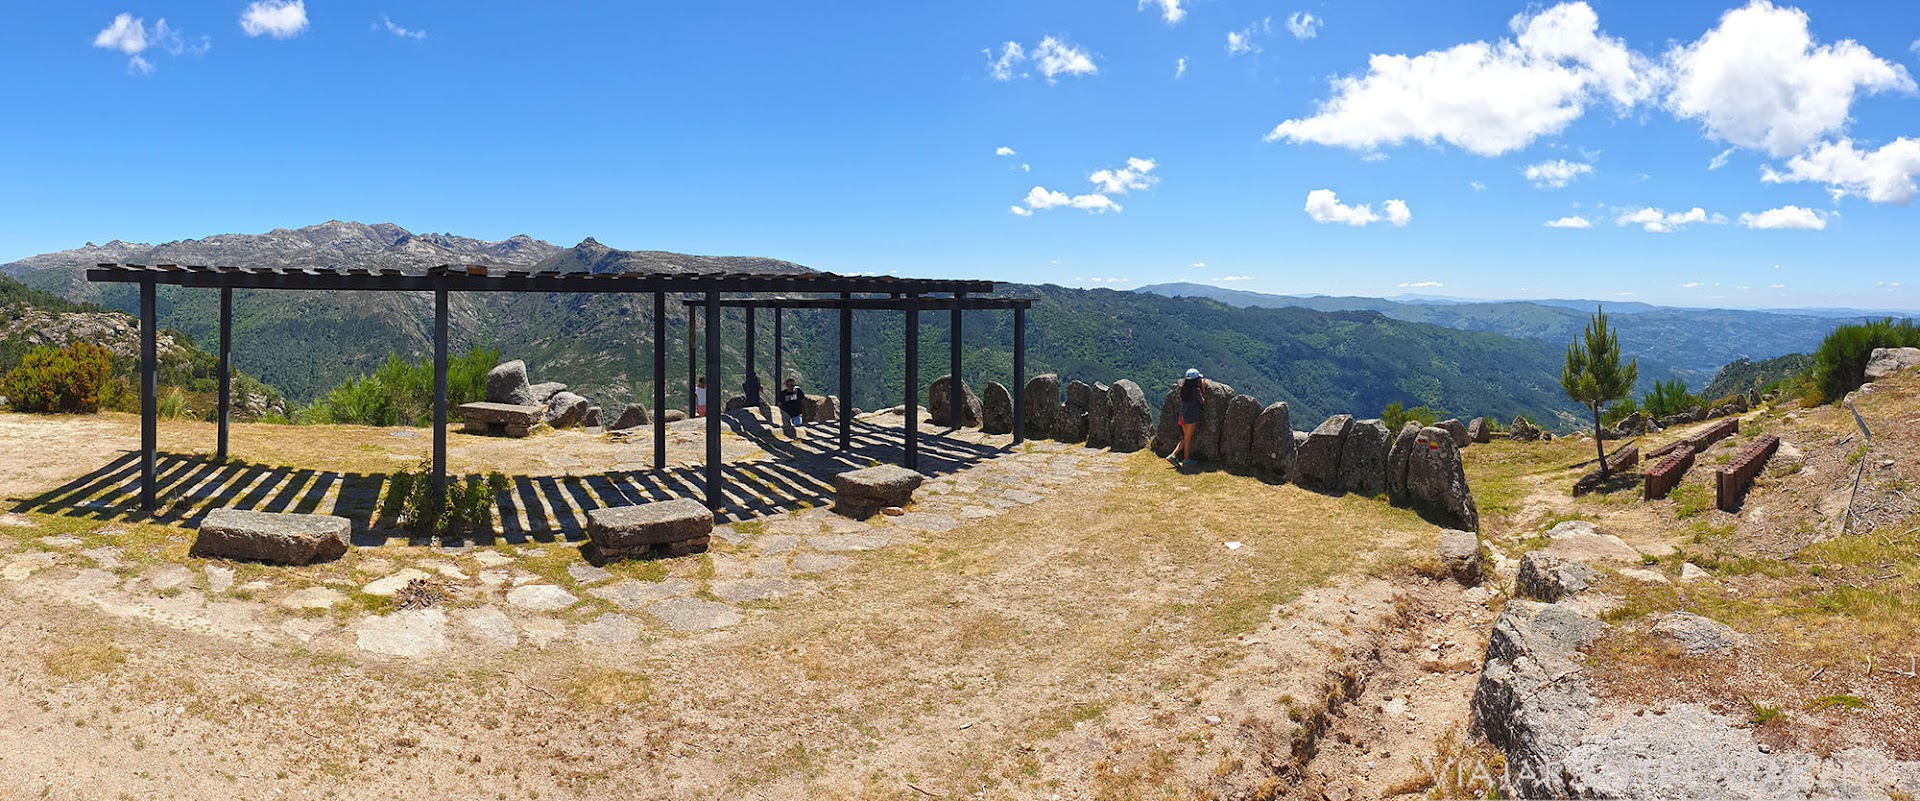 TRILHO DOS MIRADOUROS DO GERÊS - PR6 | Um trilho para conhecer as meias belas vistas panorâmicas da Serra do Gerês